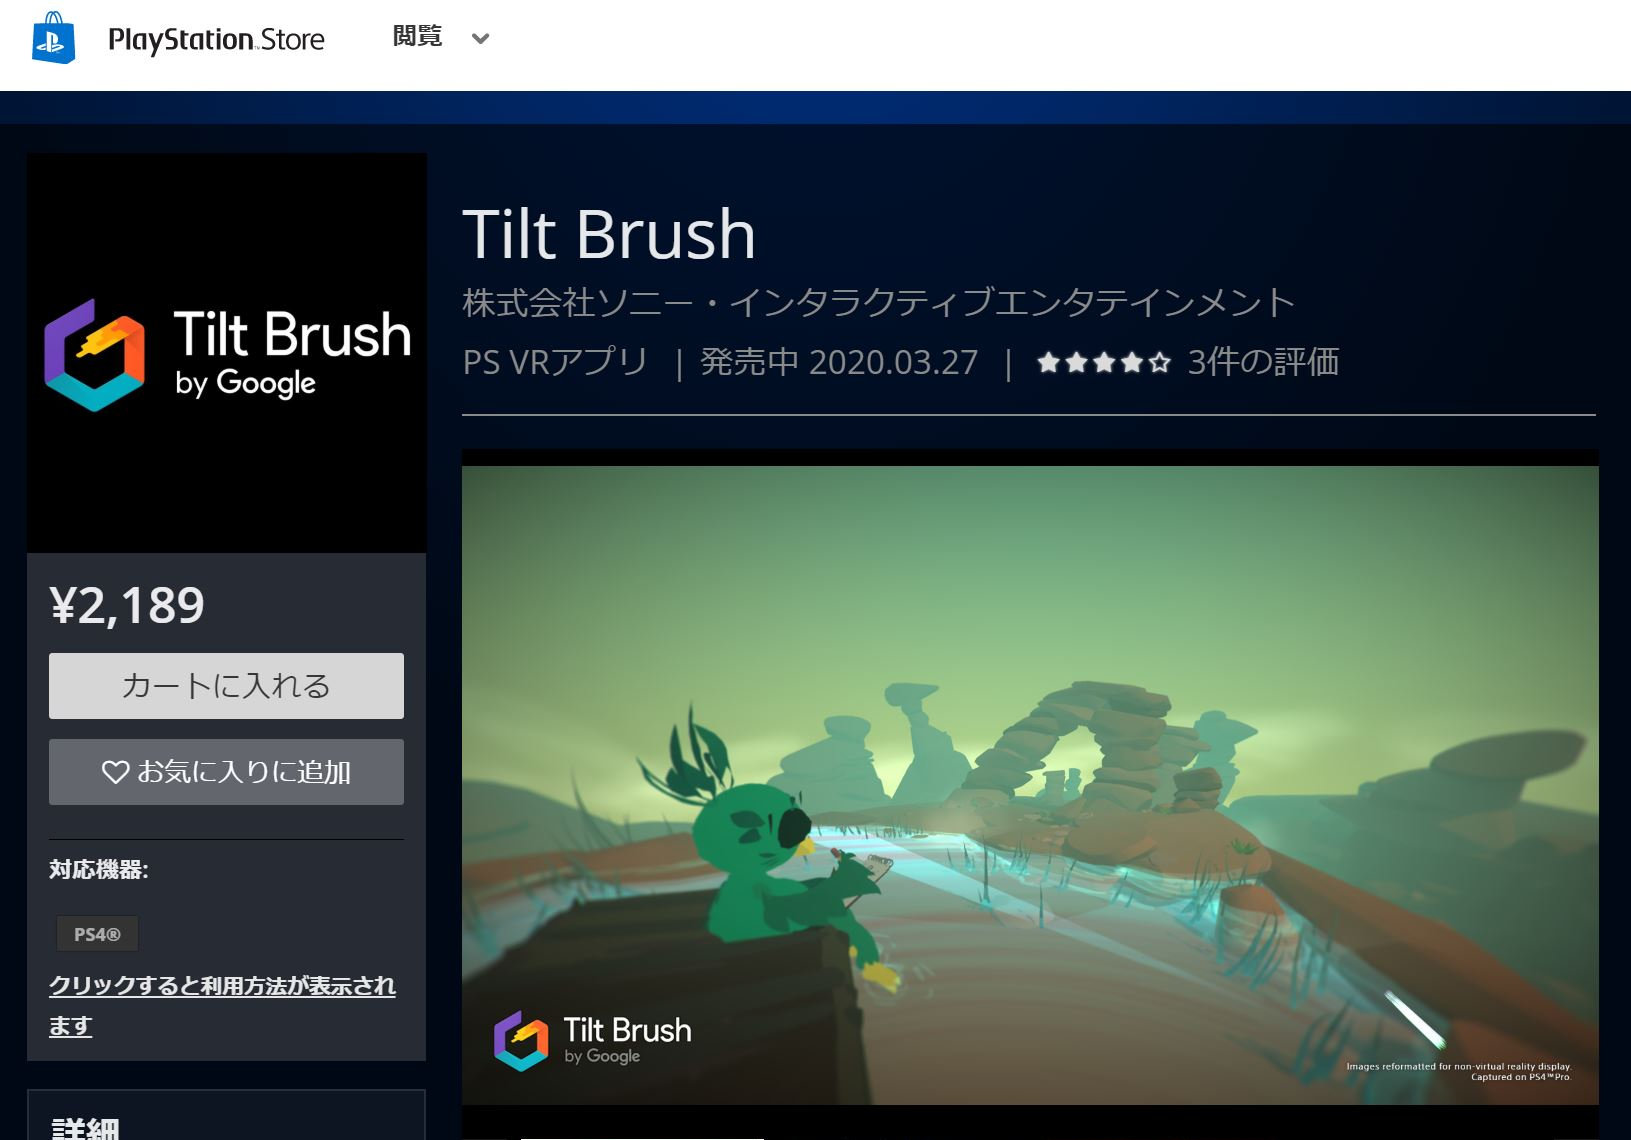 ソニー、3Dペイントソフト「Tilt Brush」の「PS VR」版を2189円で発売